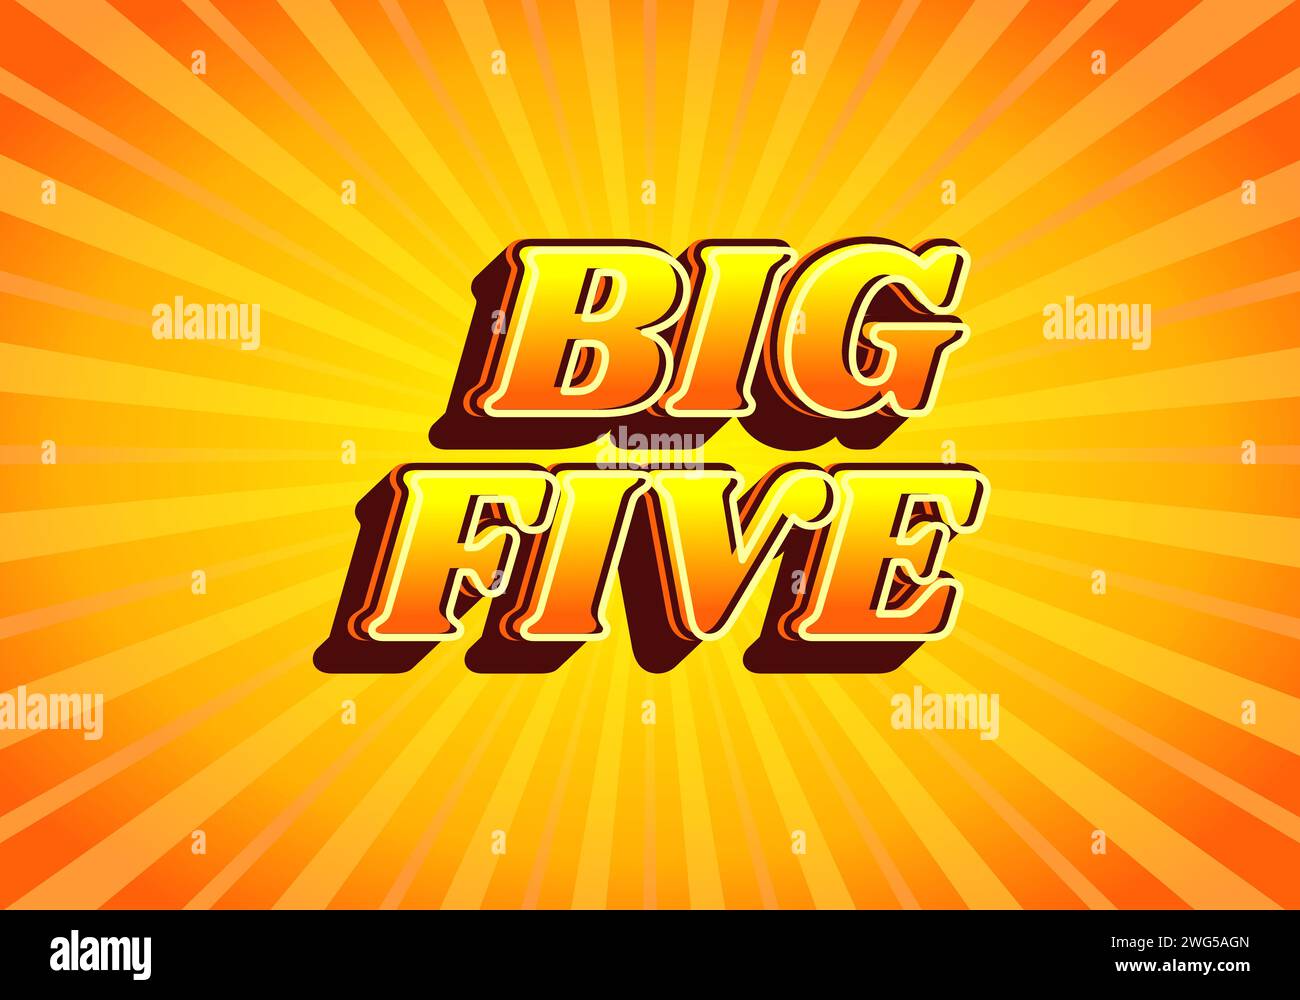 Big five. Text effect design in gradient yellow orange color, 3D look. Yellow background Stock Vector